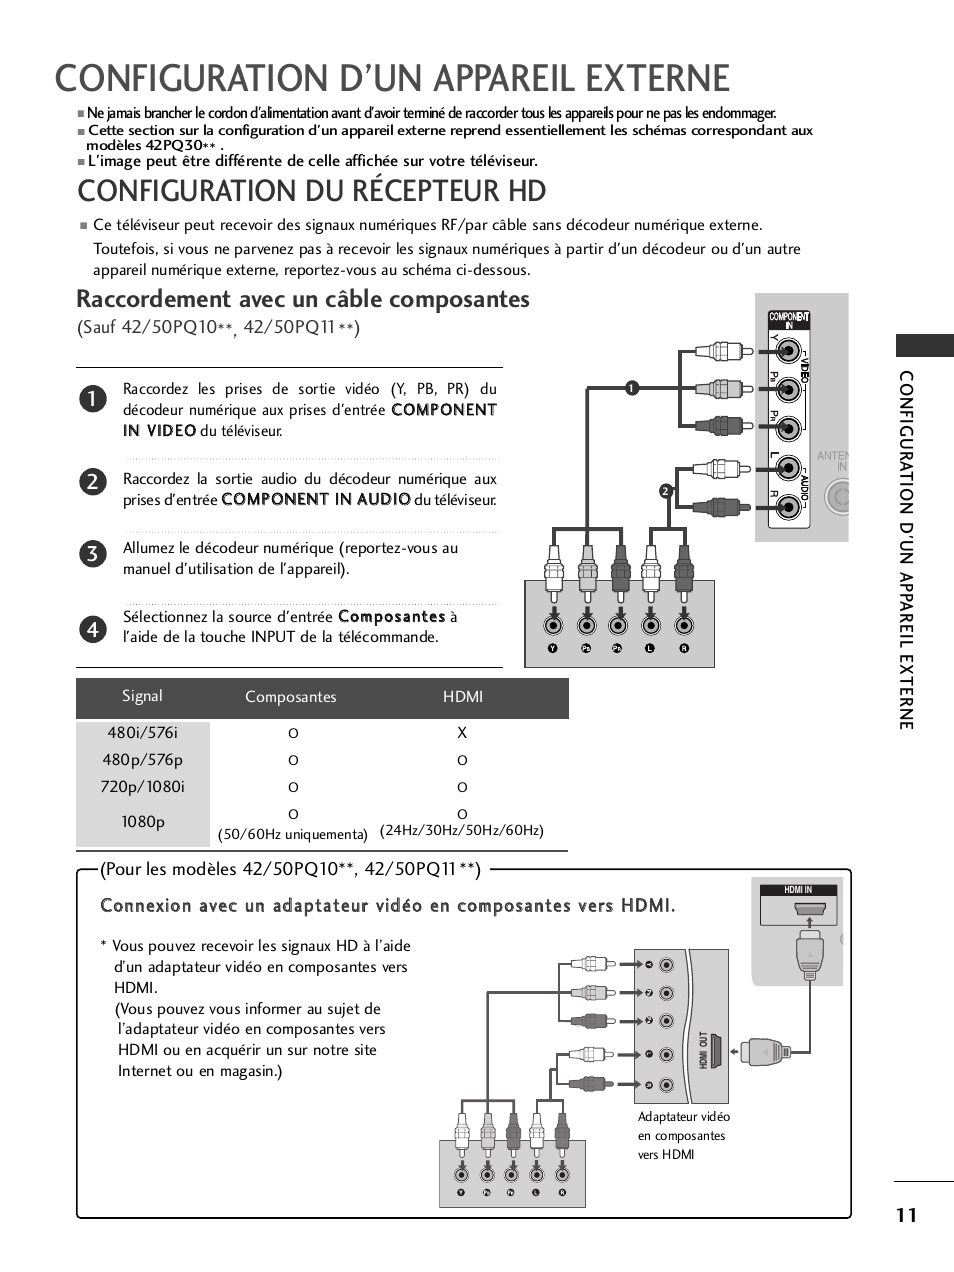 Configuration d’un appareil externe, Configuration du récepteur hd, Raccordement avec un câble composantes | LG 50PQ6000 Manuel d'utilisation | Page 13 / 124